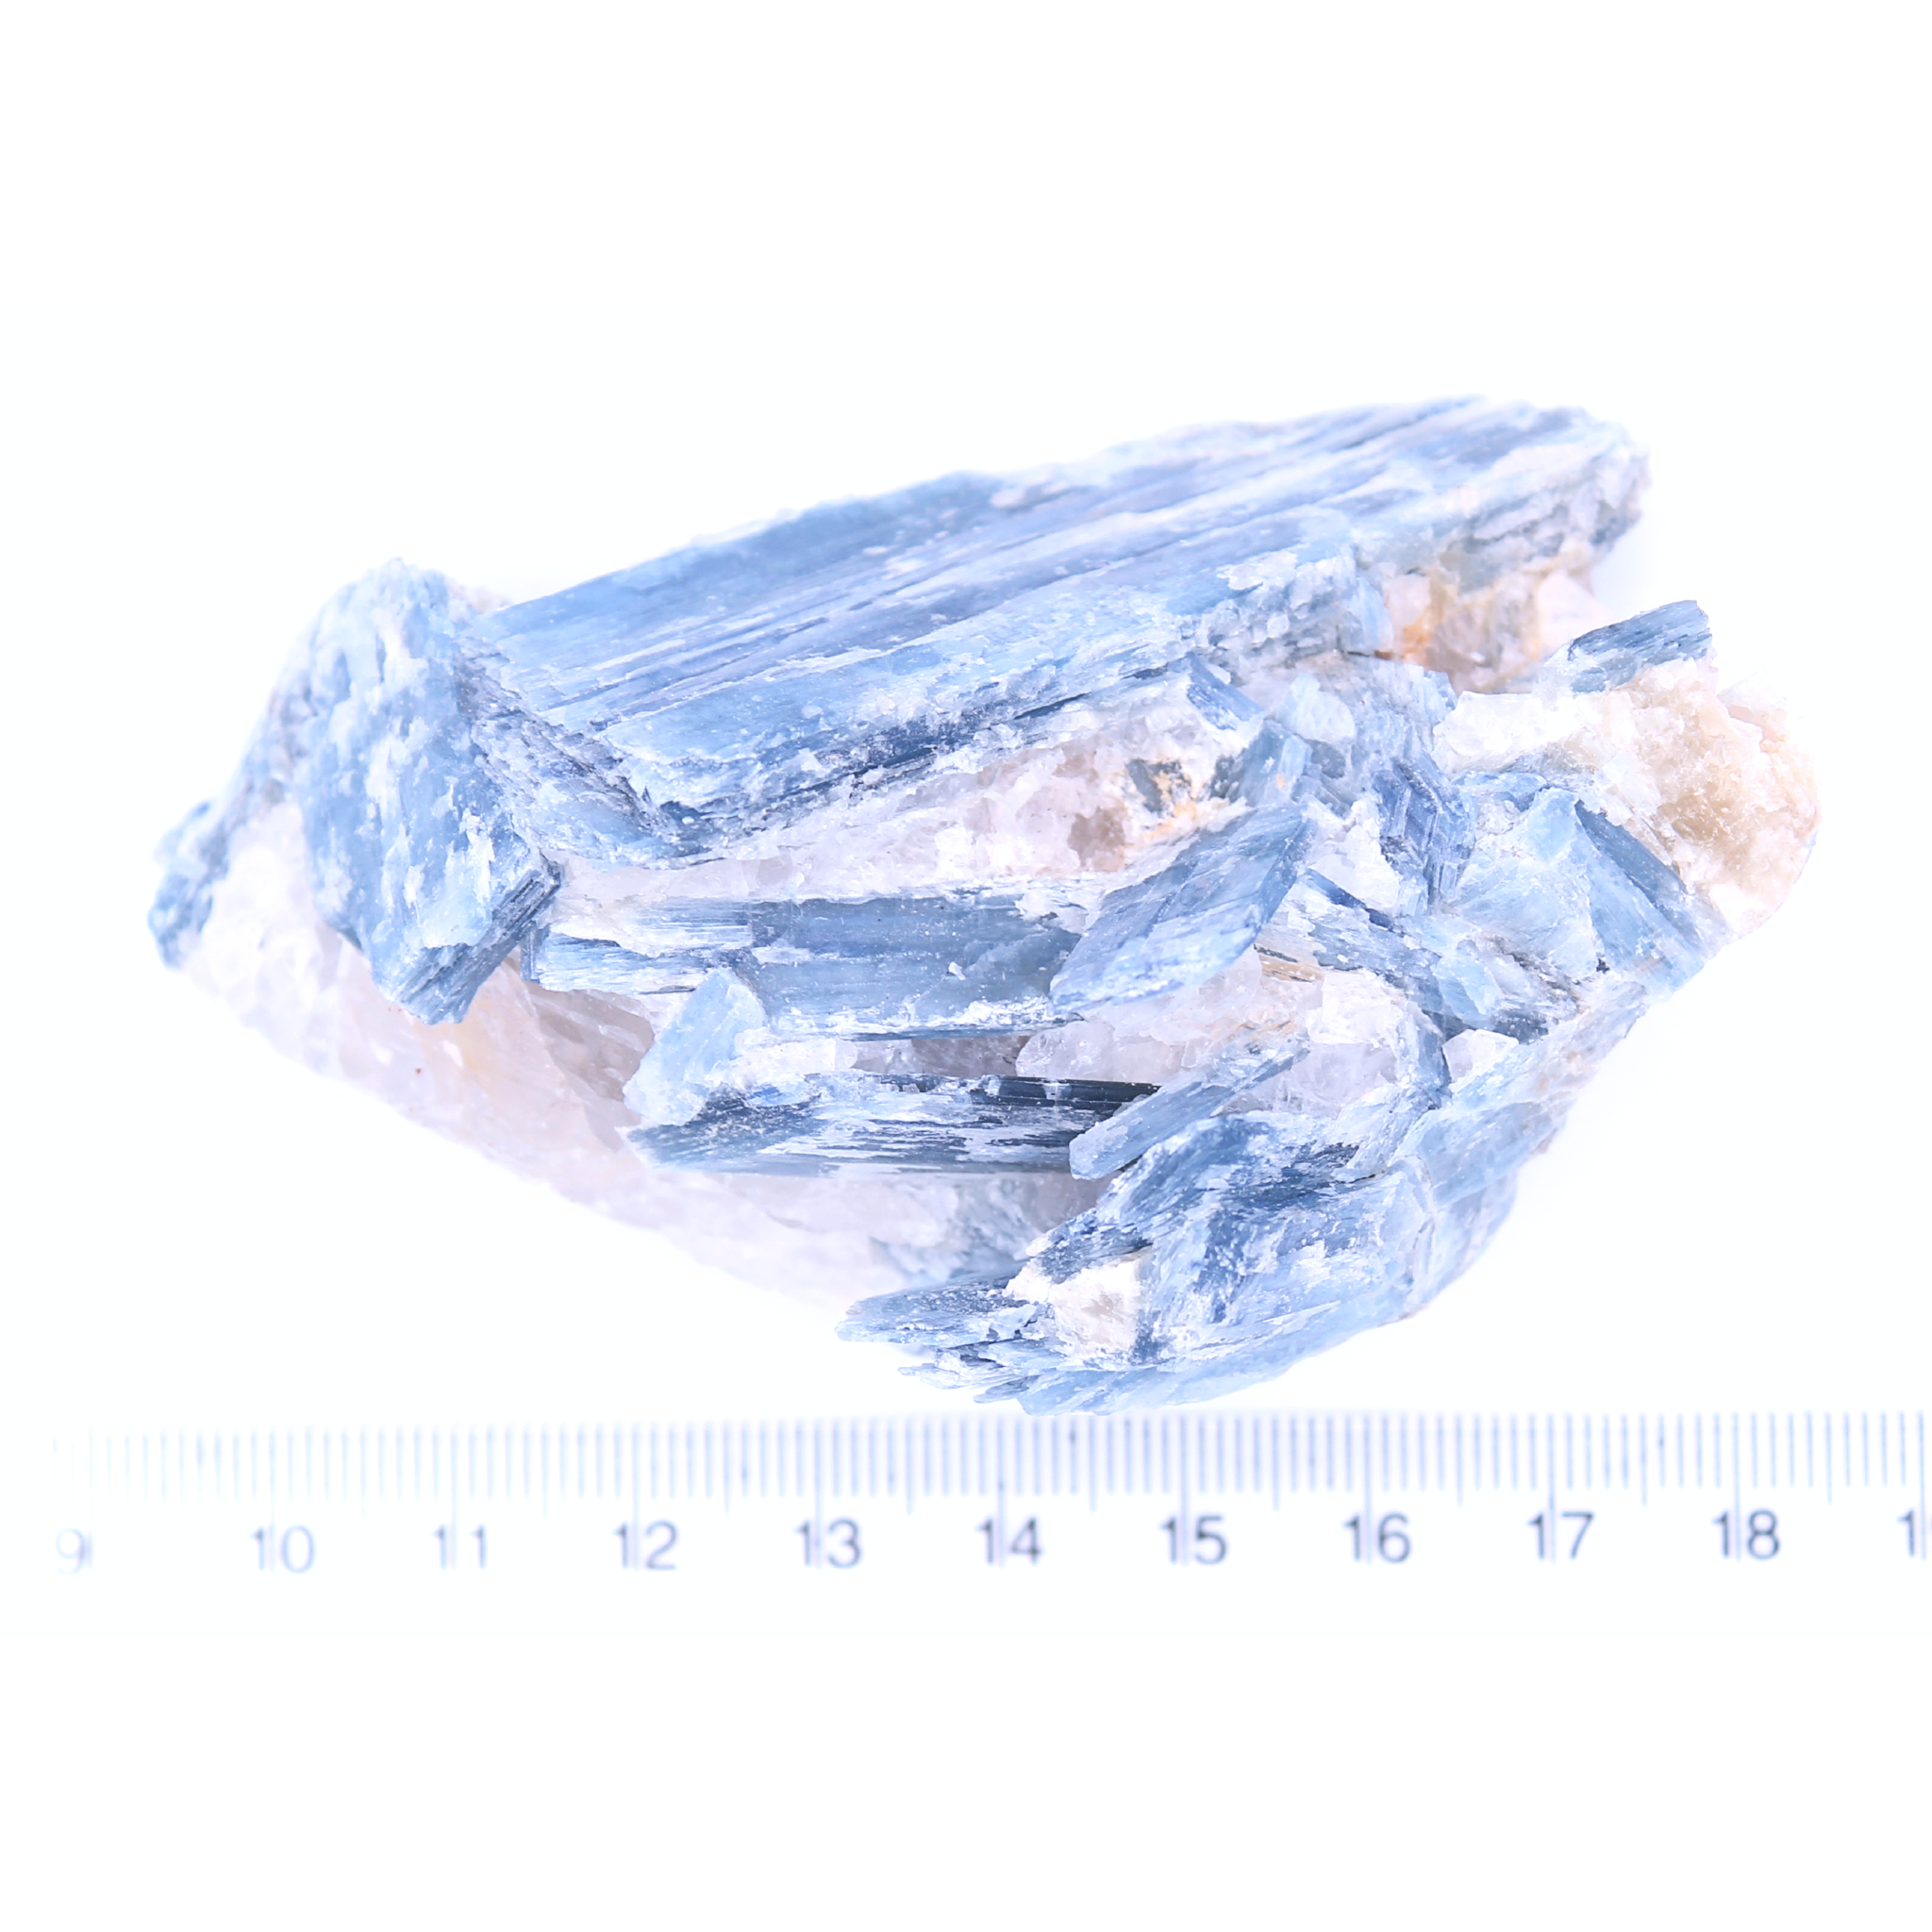 PIERRETOILES Disthène (Cyanite) 180 g Brésil -Piece Unique de Collection